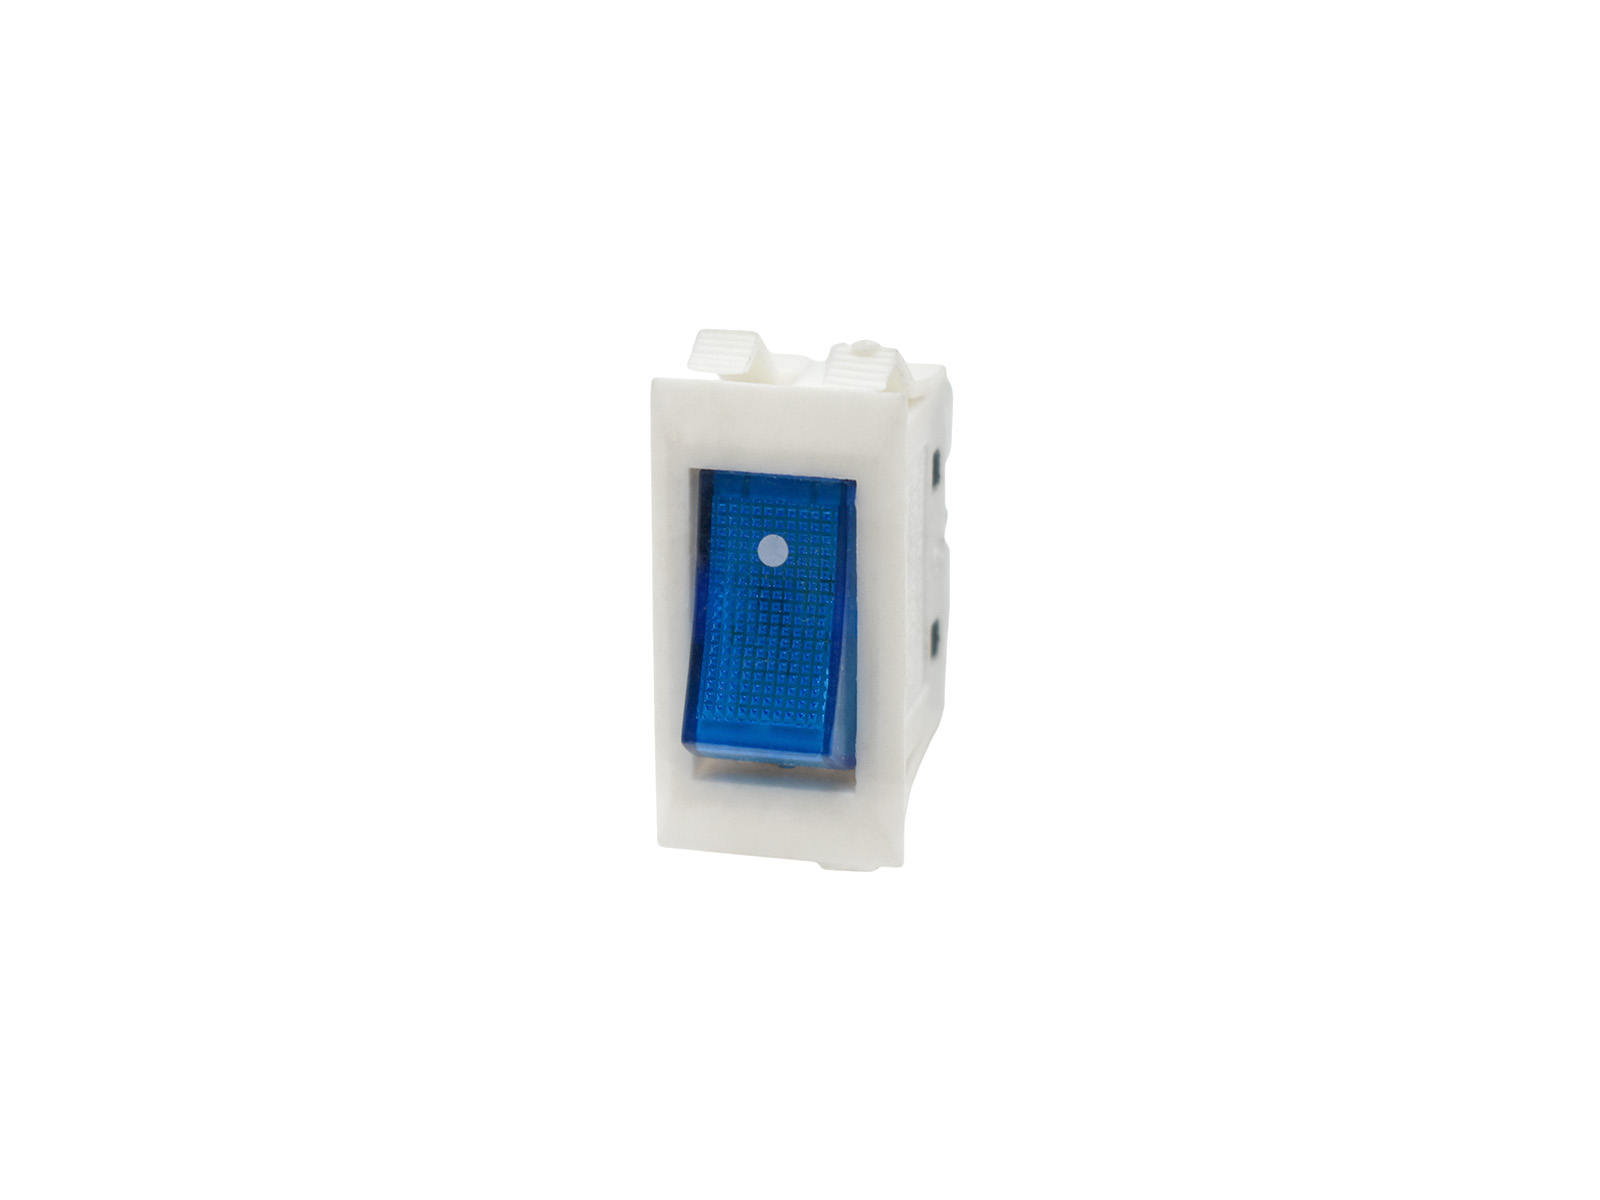 Кнопка EKPARTS YRS-9-21(A) белая, синий колпачок пластиковая кнопка включения для asus me400c 1b белая